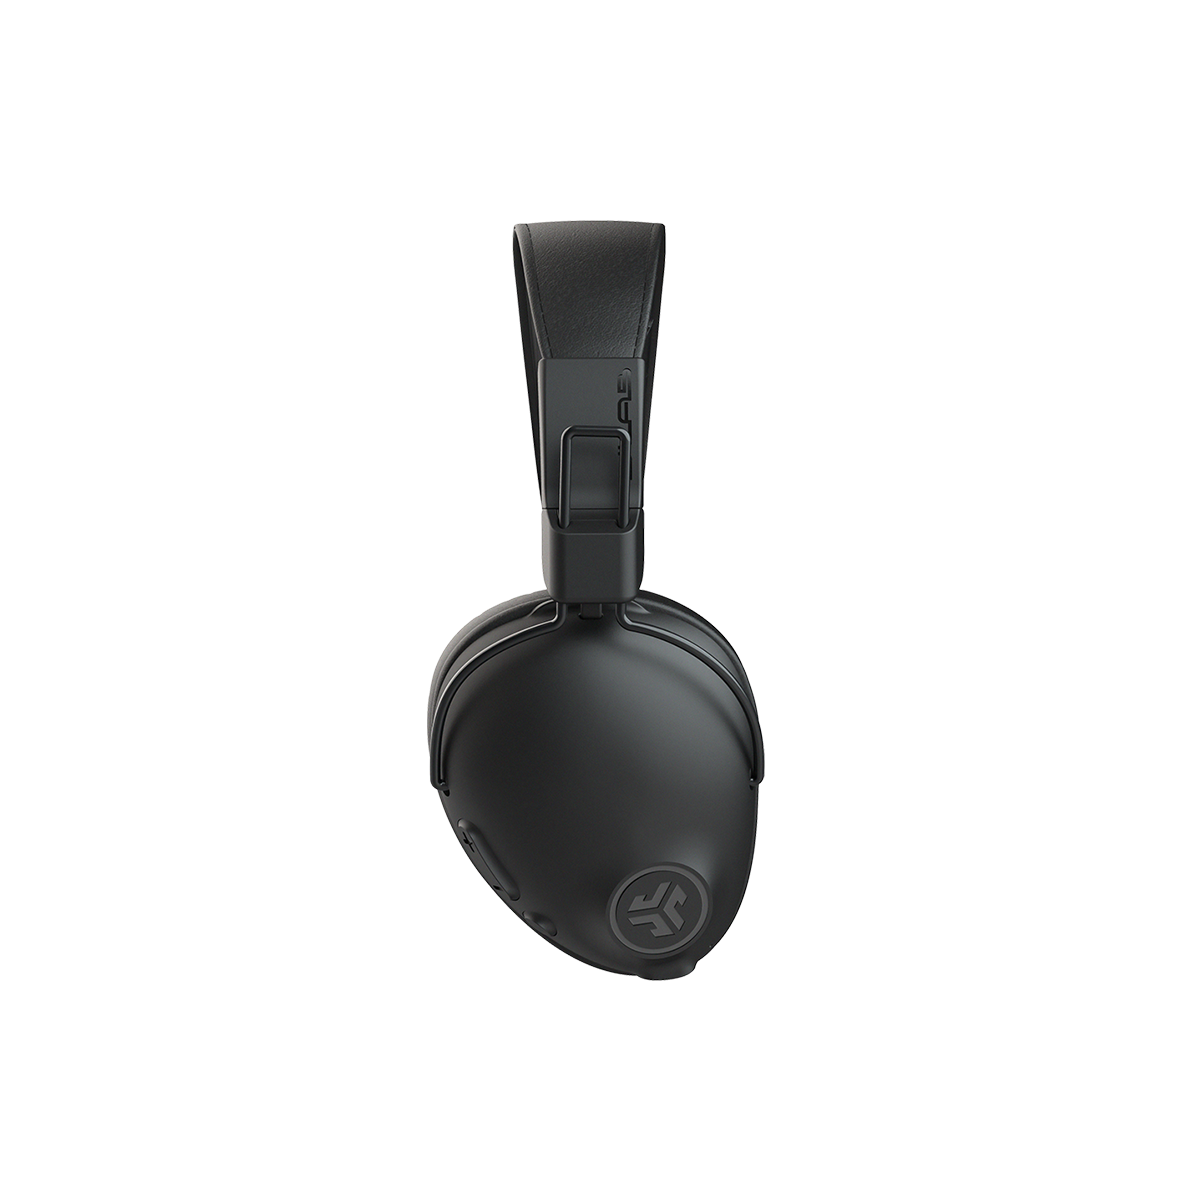 Tai nghe Bluetooth chụp tai TWS Jlab Studio Pro màu đen foam Over-ear thời gian nghe 50H bluetooth 5.0 âm thanh EQ3 - Hàng chính hãng